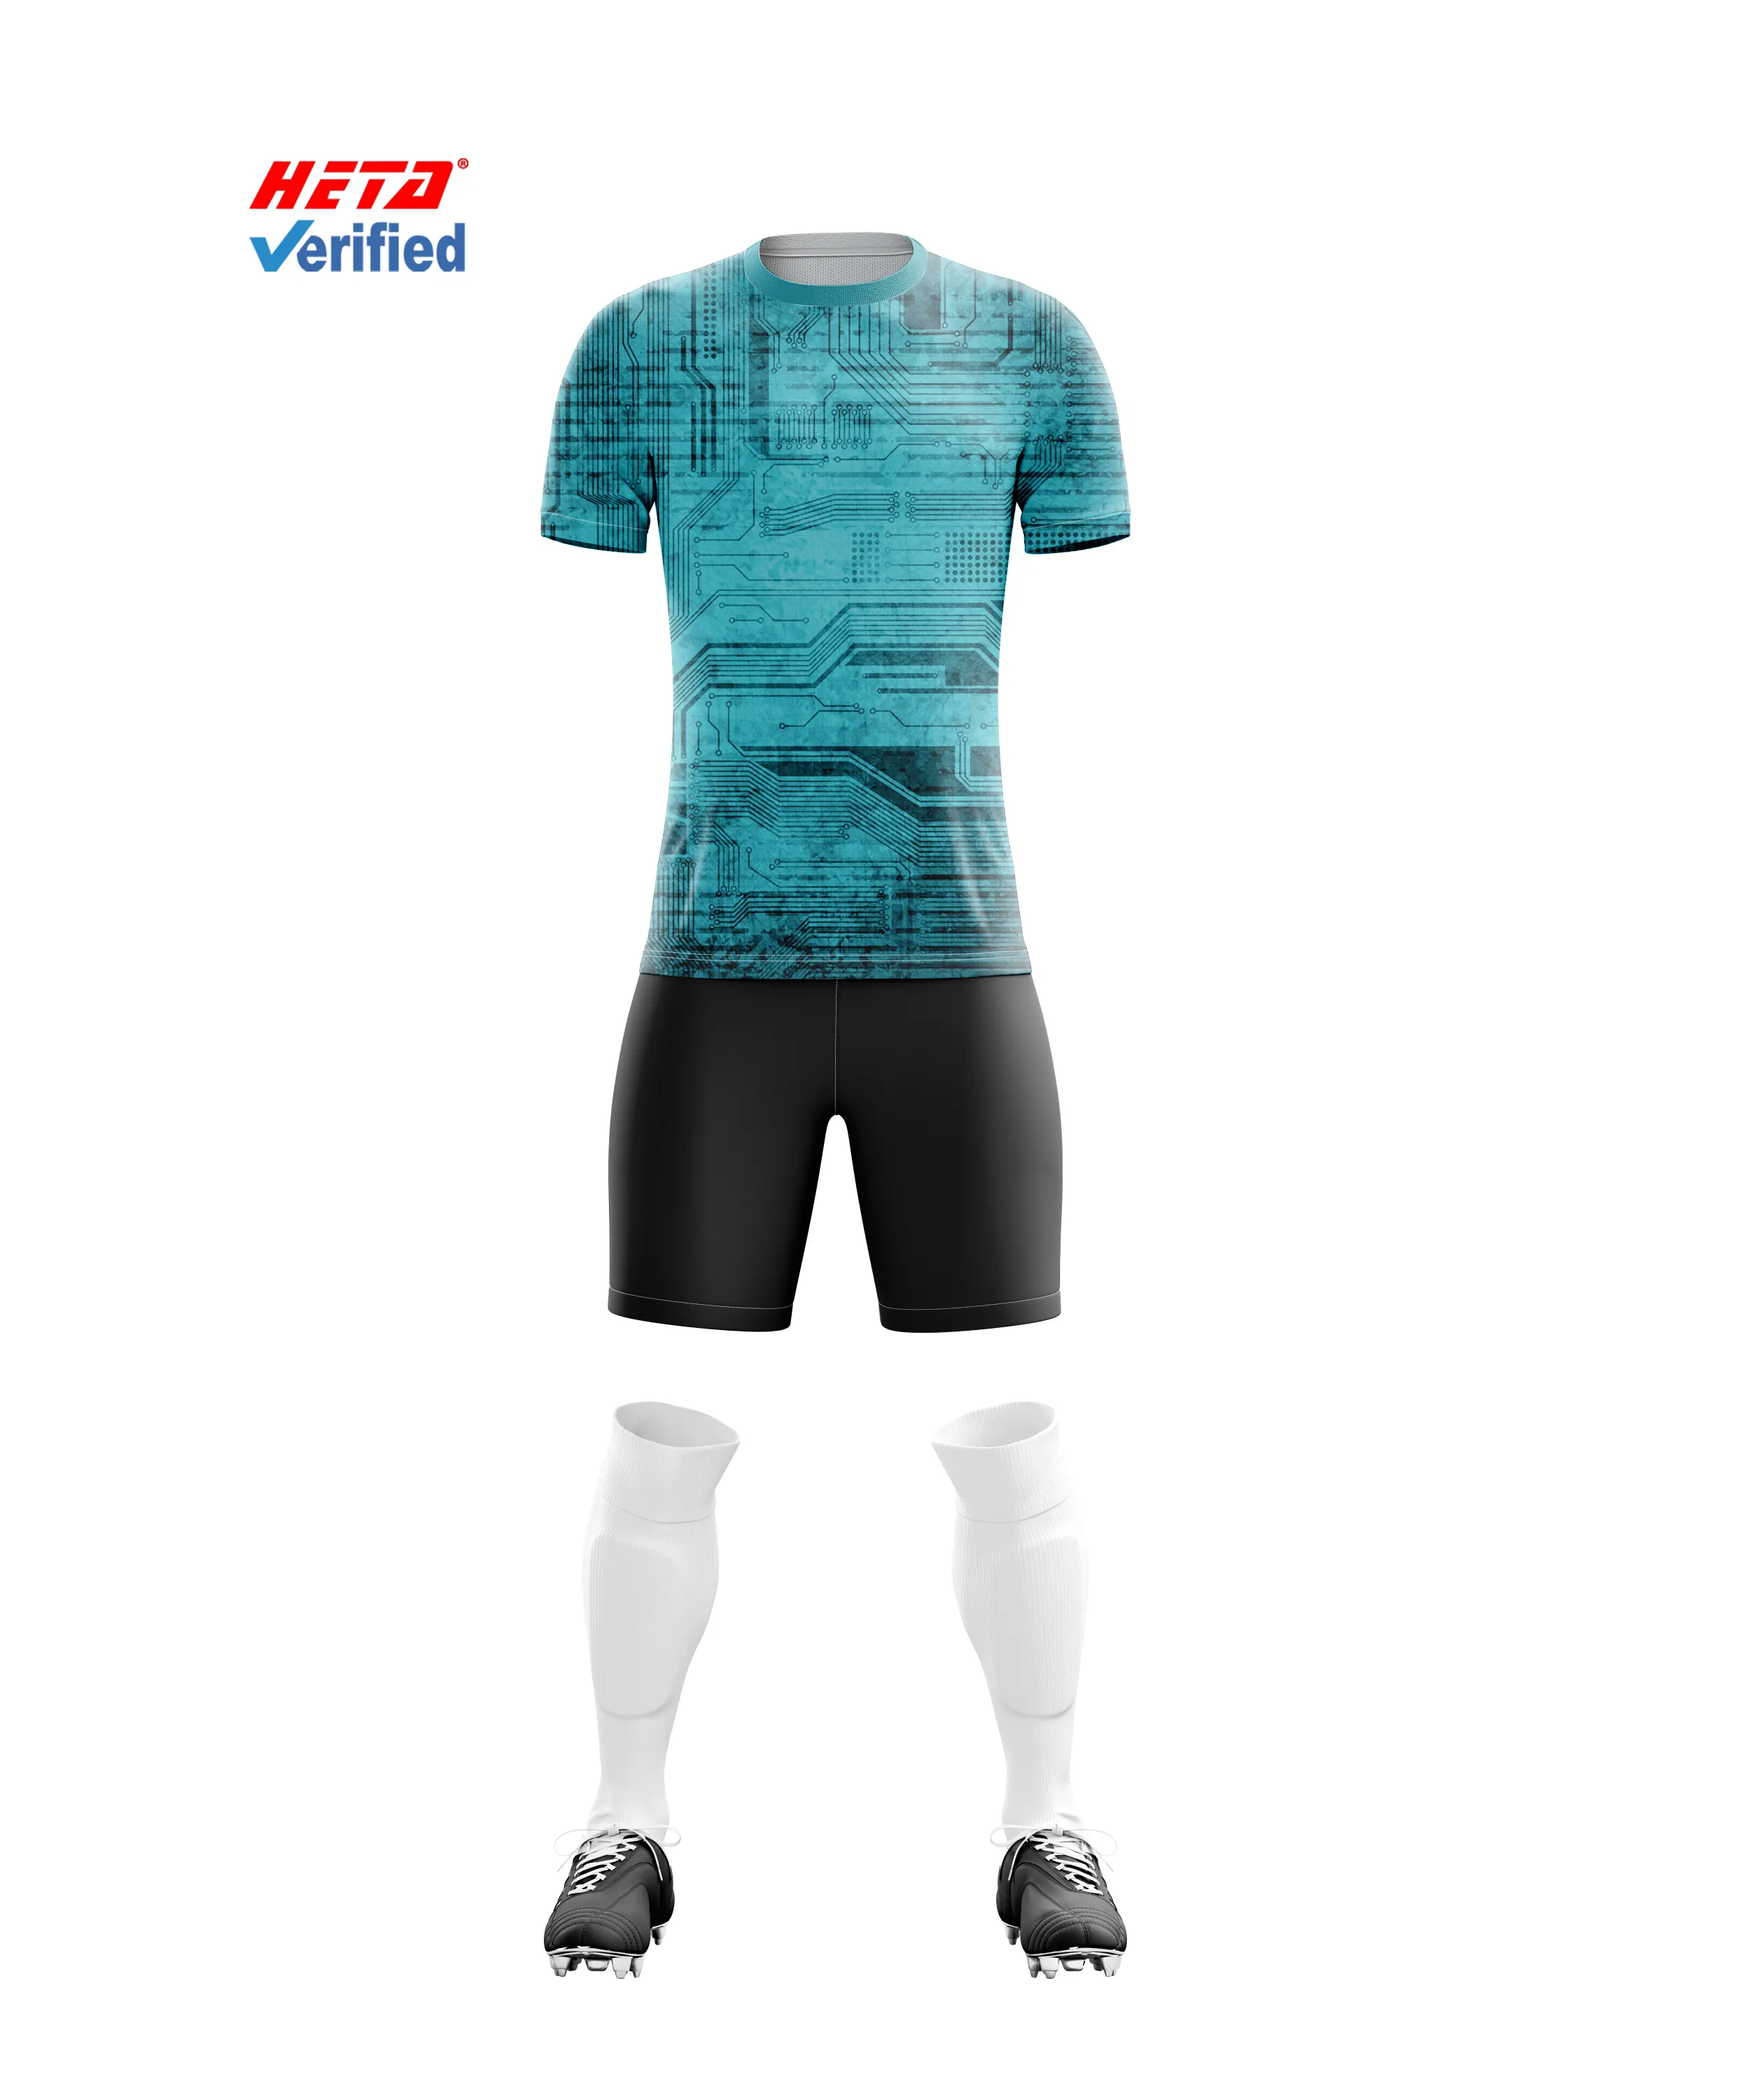 थोक सस्ते क्लब और टीम के नवीनतम डिजाइन युवा सॉलीएटेड सॉल्ट जर्सी फुटबॉल शर्ट